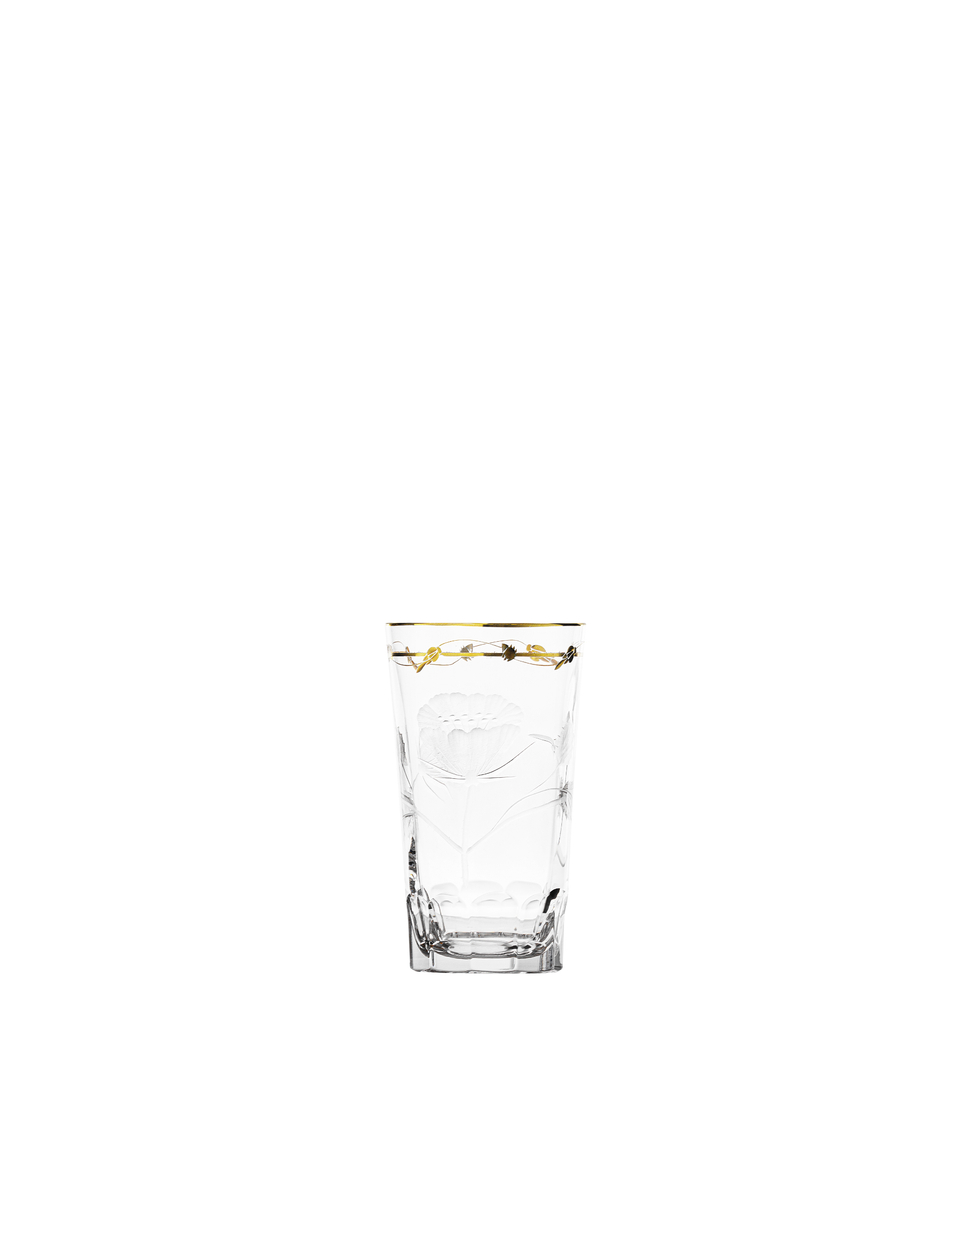 Paula spirit glass, 70 ml